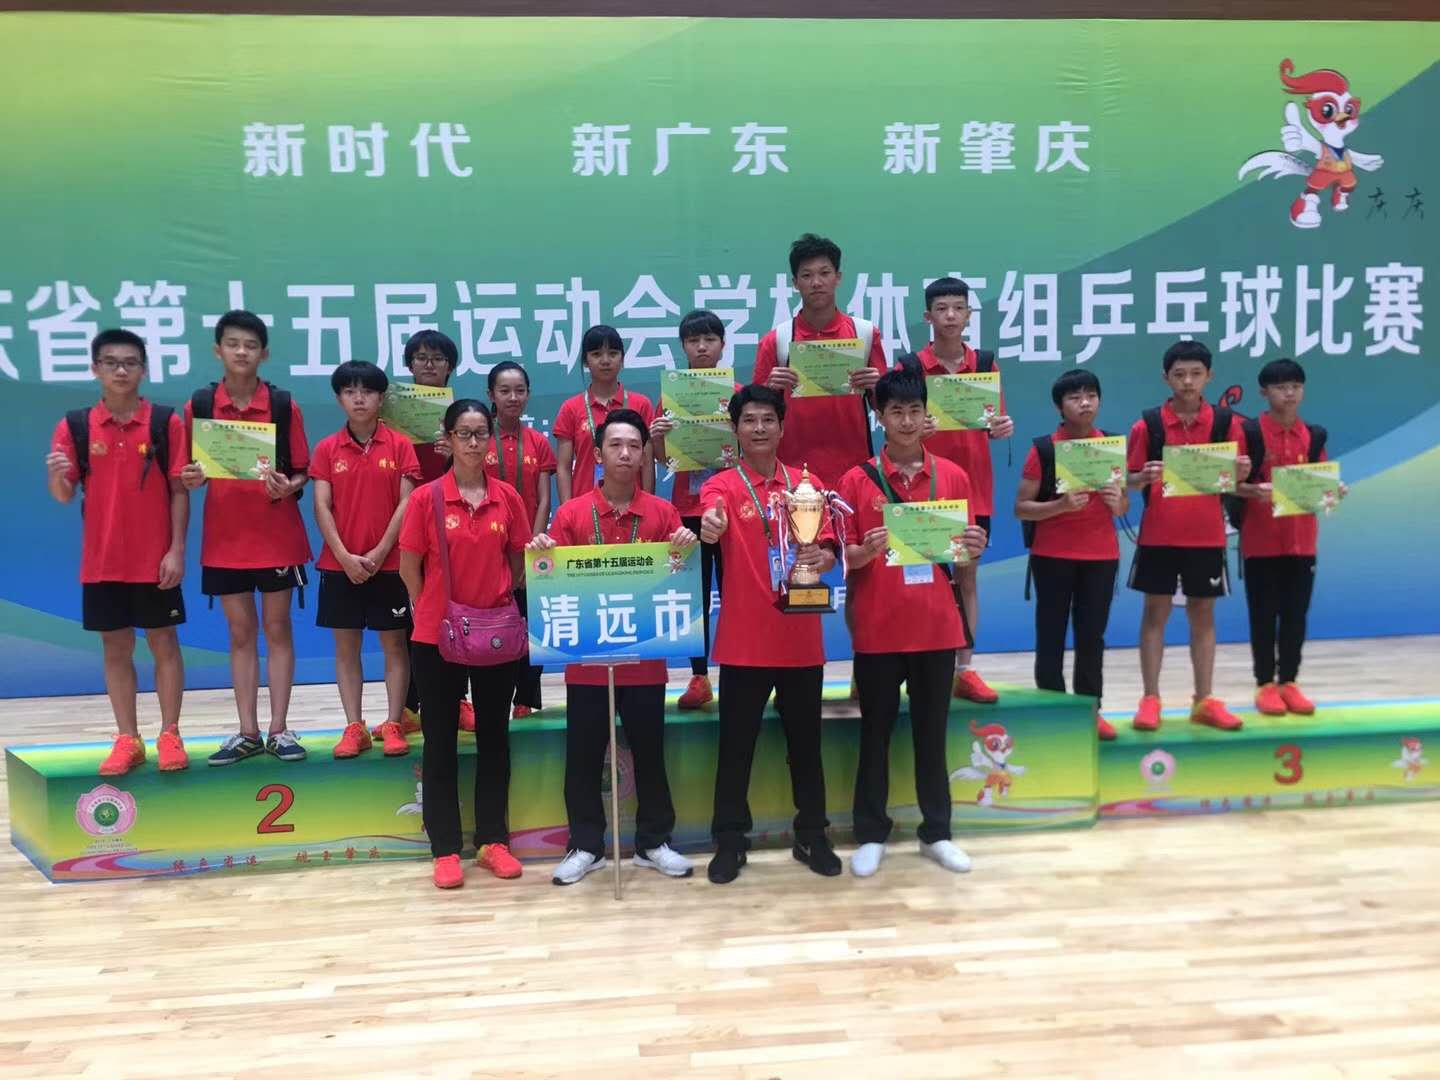 2018广东省第十五届运动会学校体育组兵乒球比赛服装定制